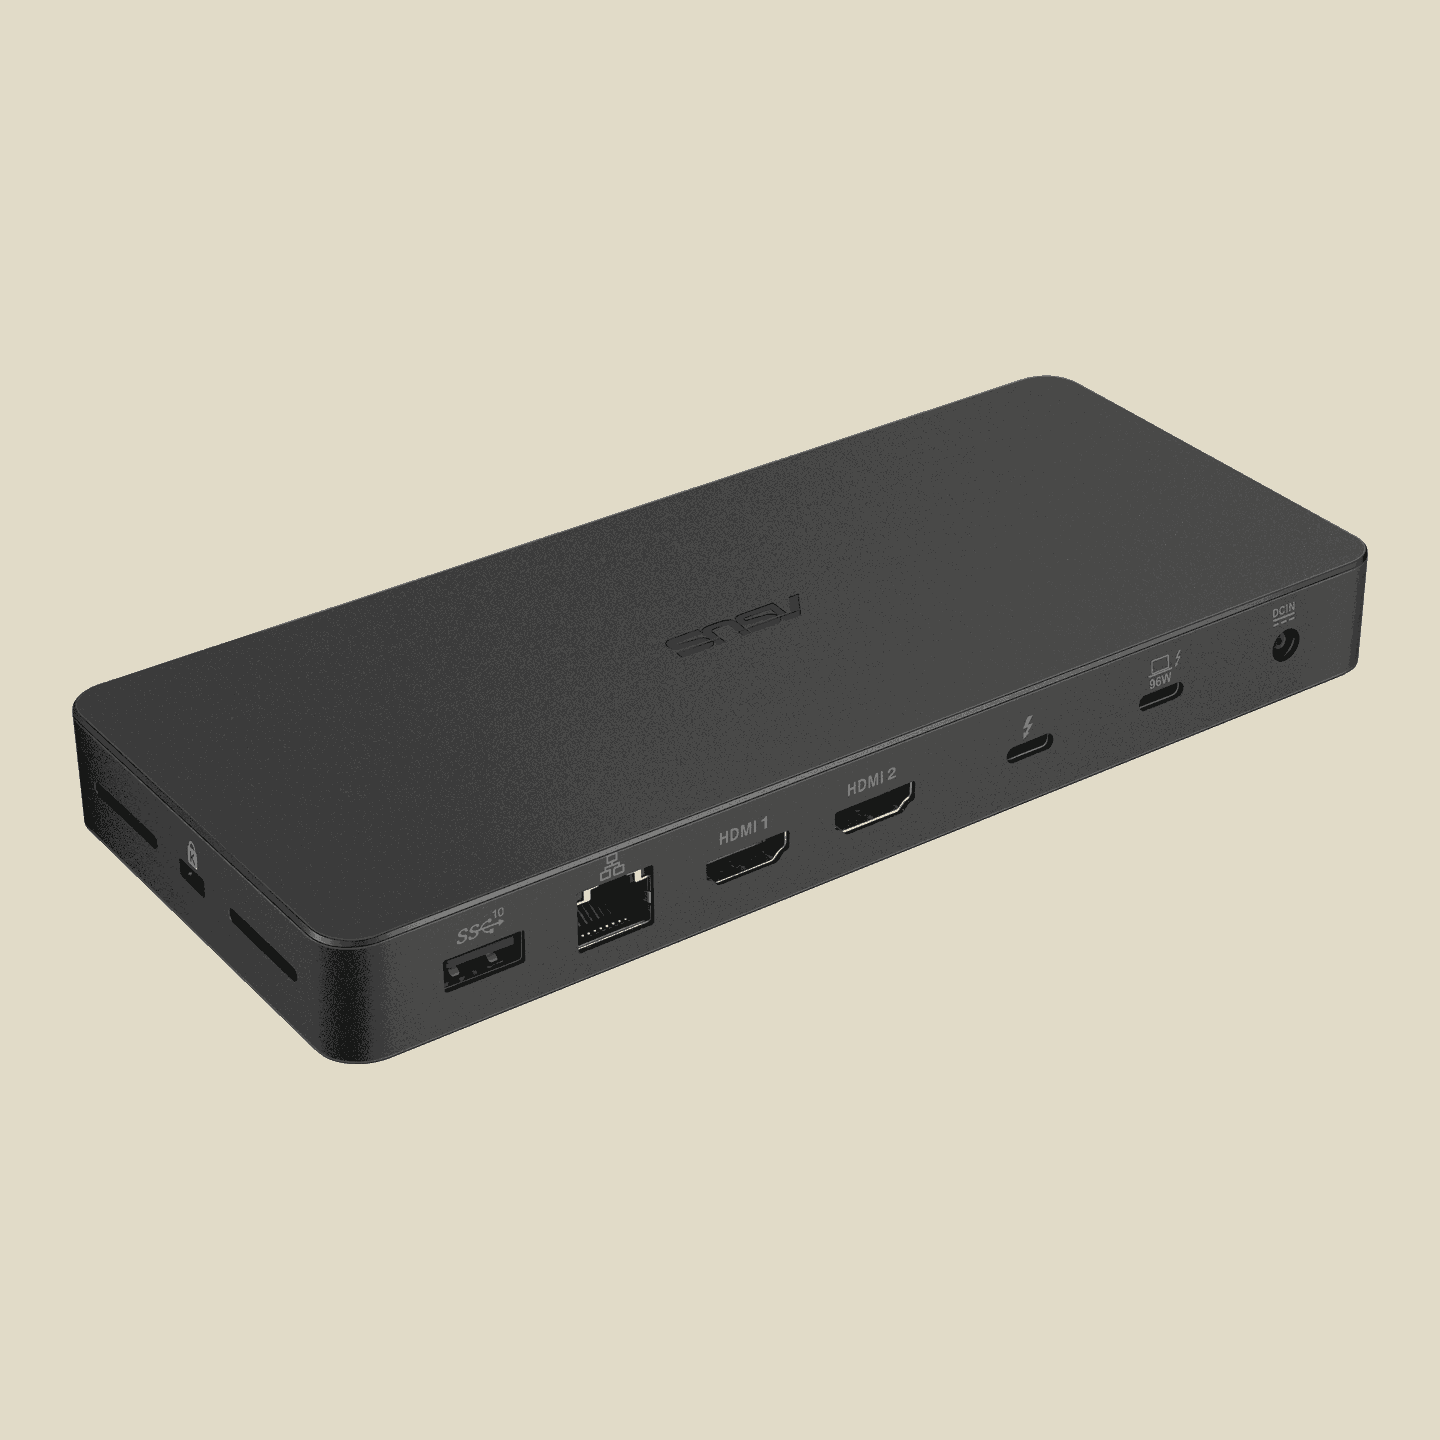 华硕推出 12 合 1 雷电 4 扩展坞 DC500，提供 UHS-II 读卡器、HDMI 2.1、2.5G 网口等